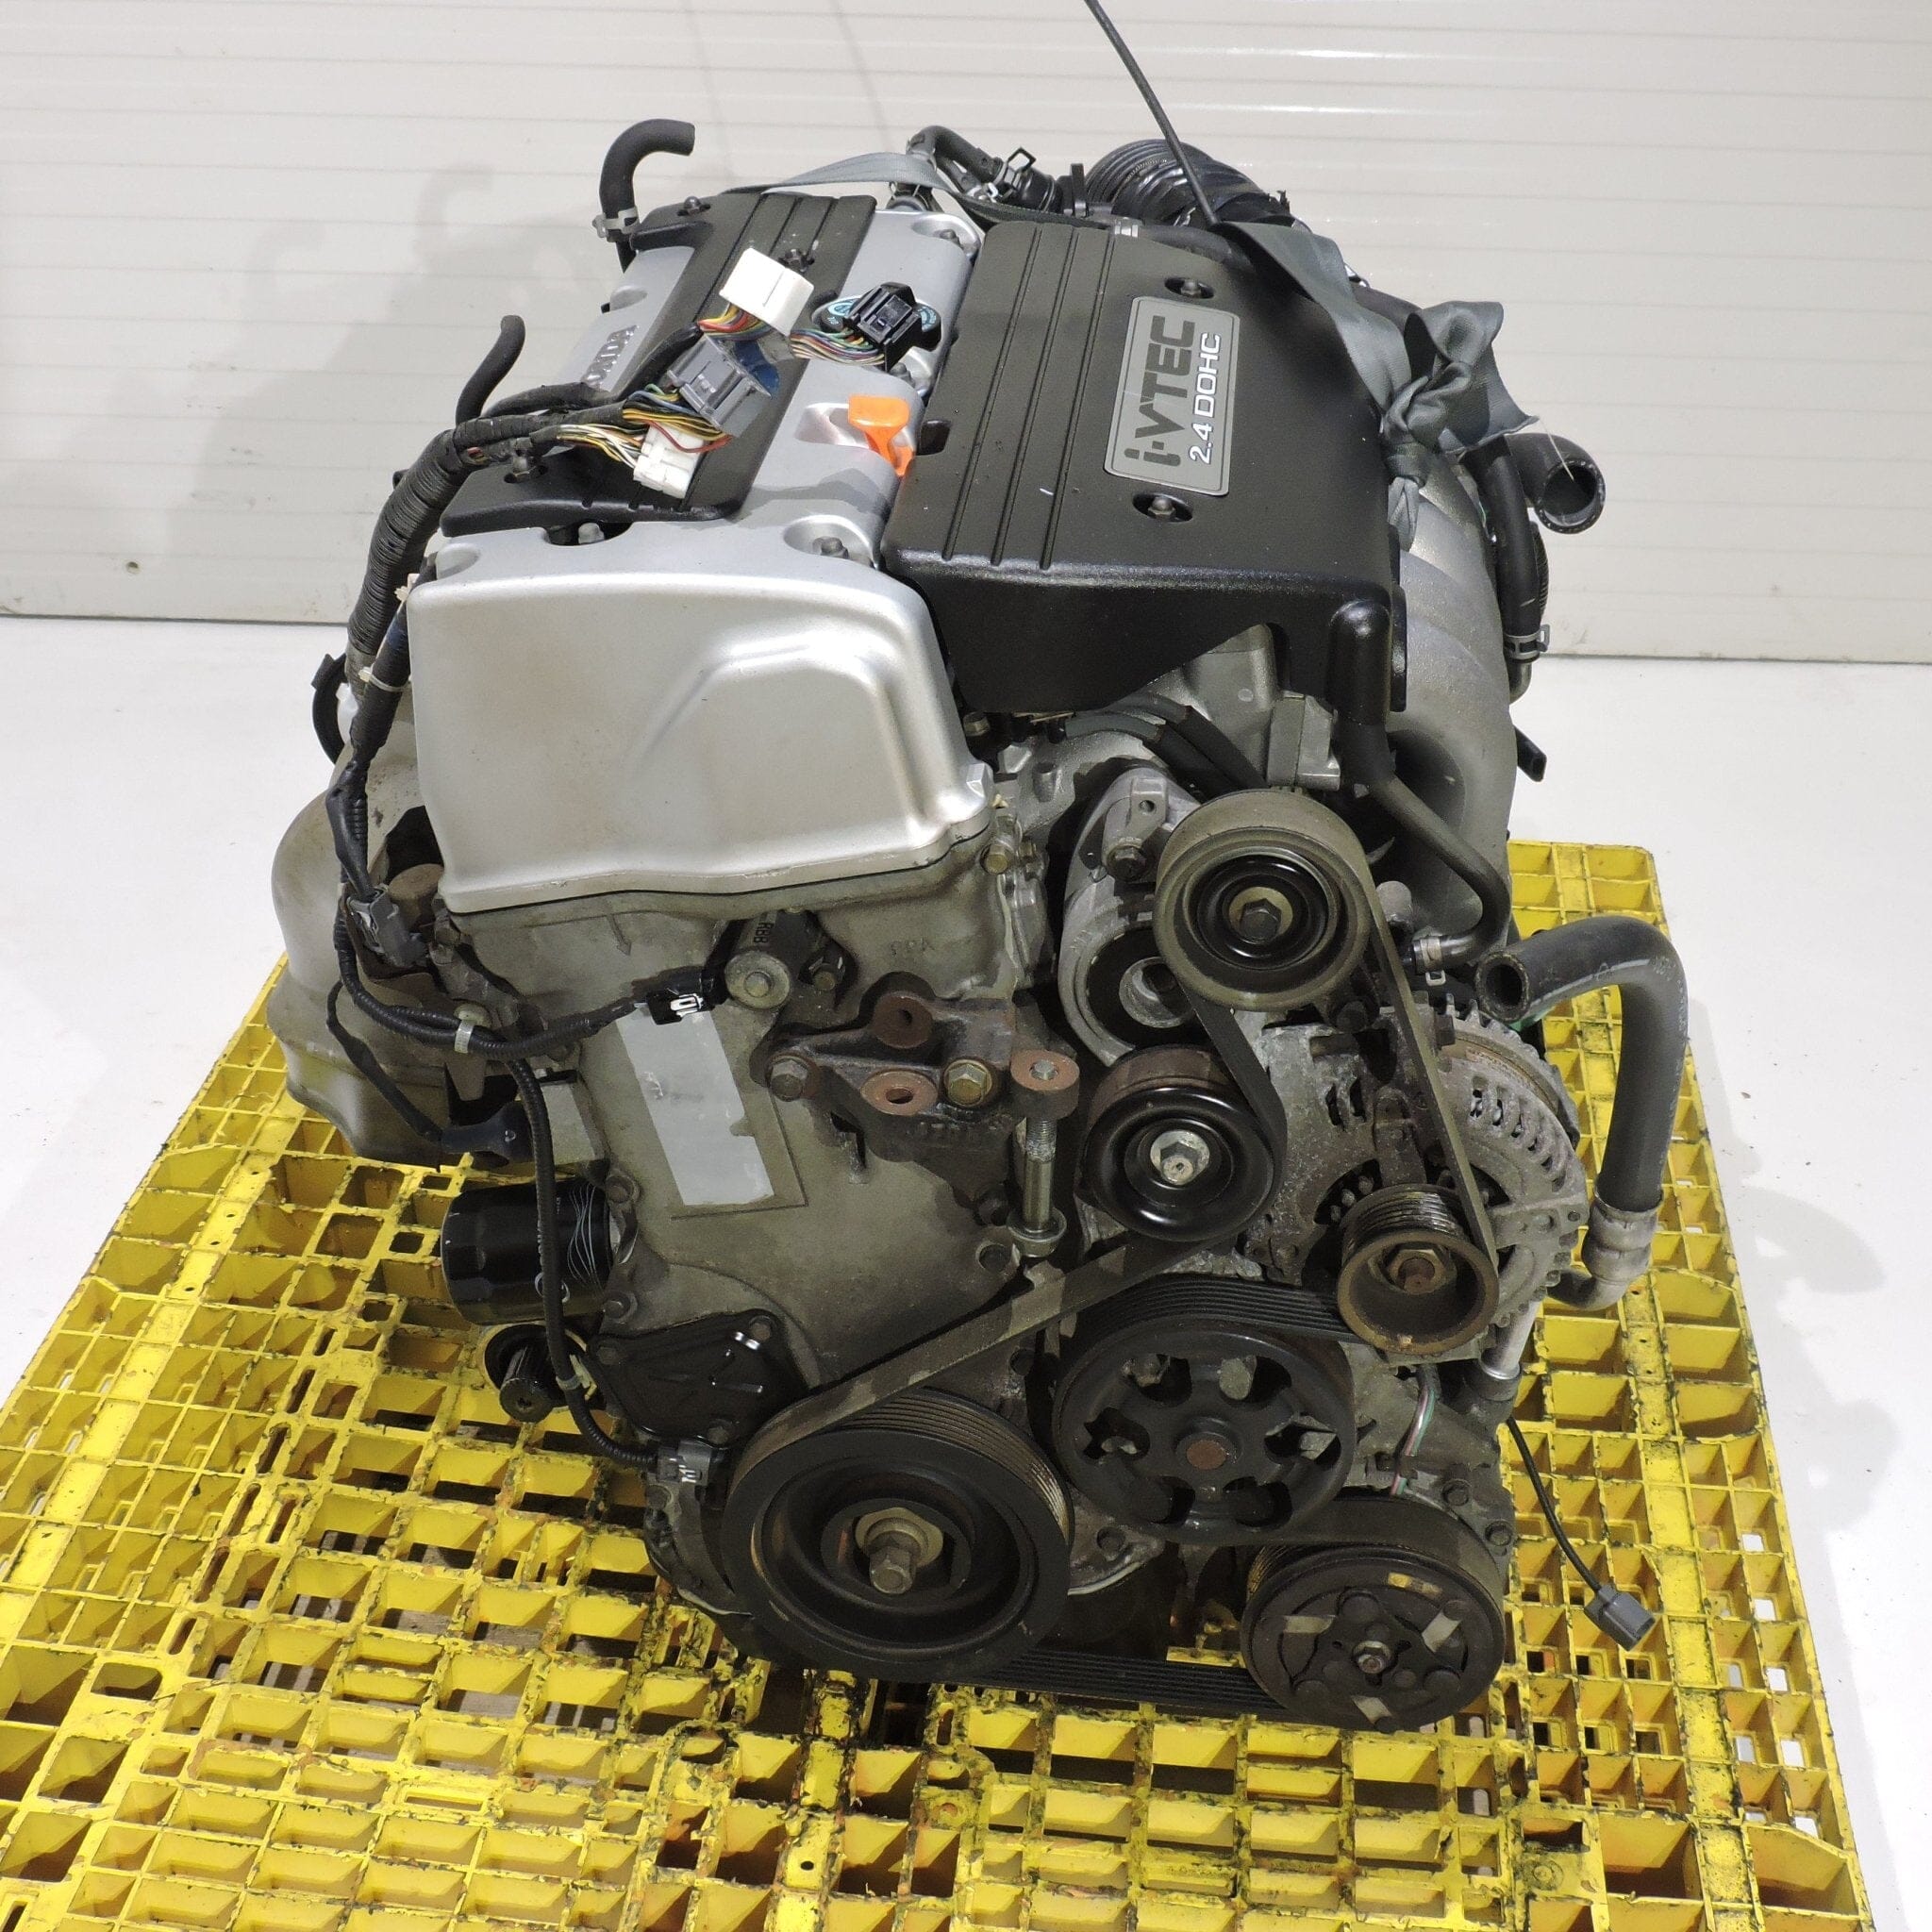 Honda Accord 2003-2007 2.4L Dohc I-Vtec Complete Engine Transmission K24a